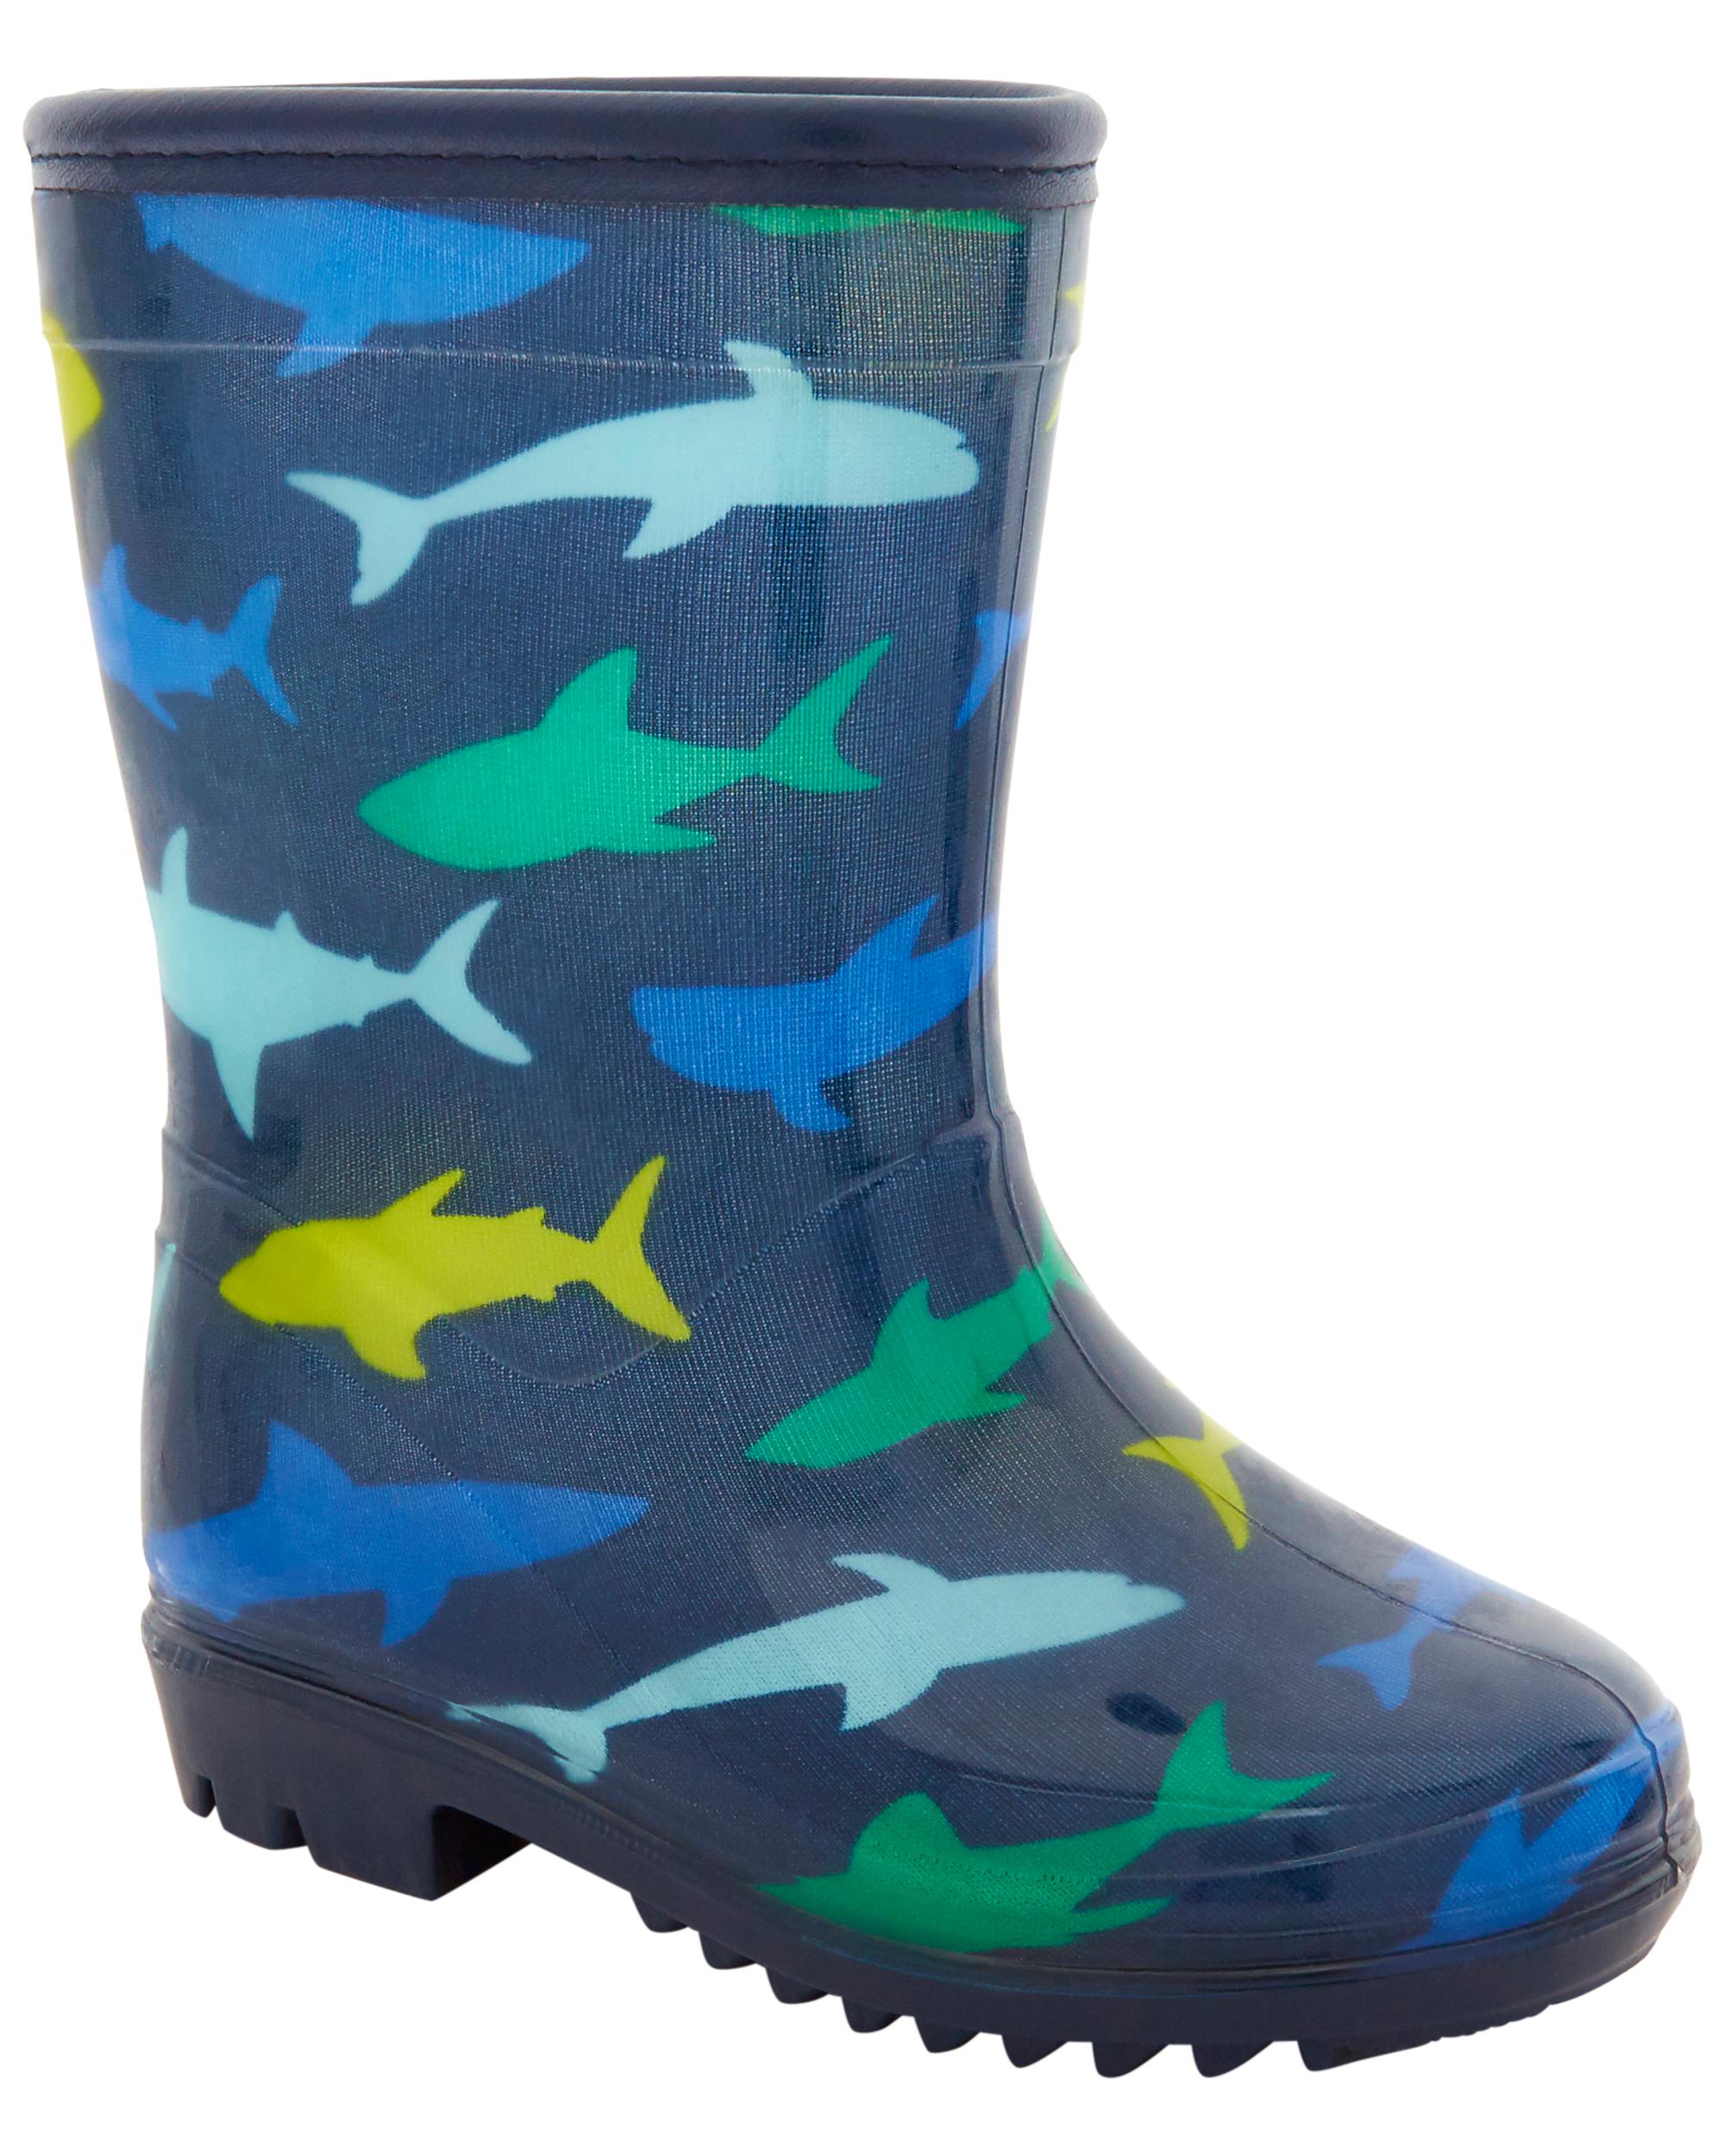 Shark Rain Boots